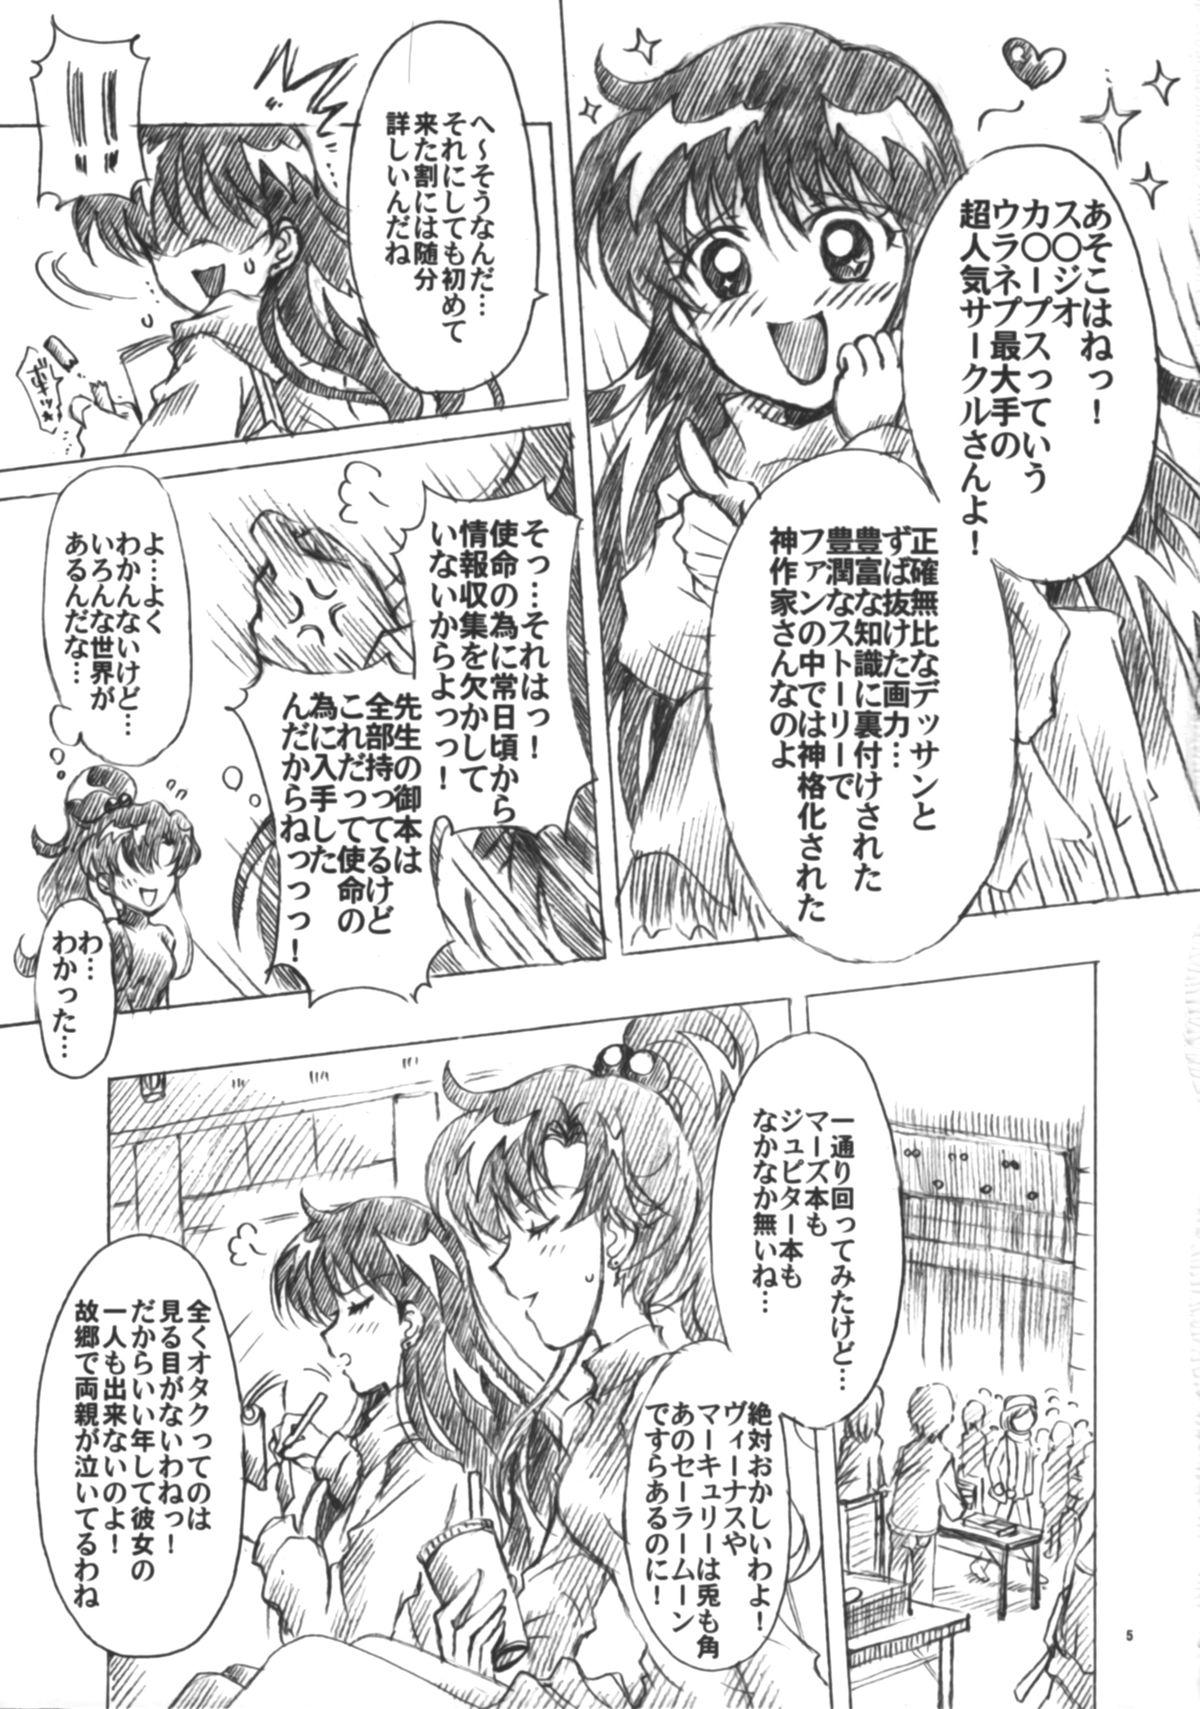 Pinay Boku no Kanojo wa Sailor Senshi 6 - Sailor moon Scandal - Page 6